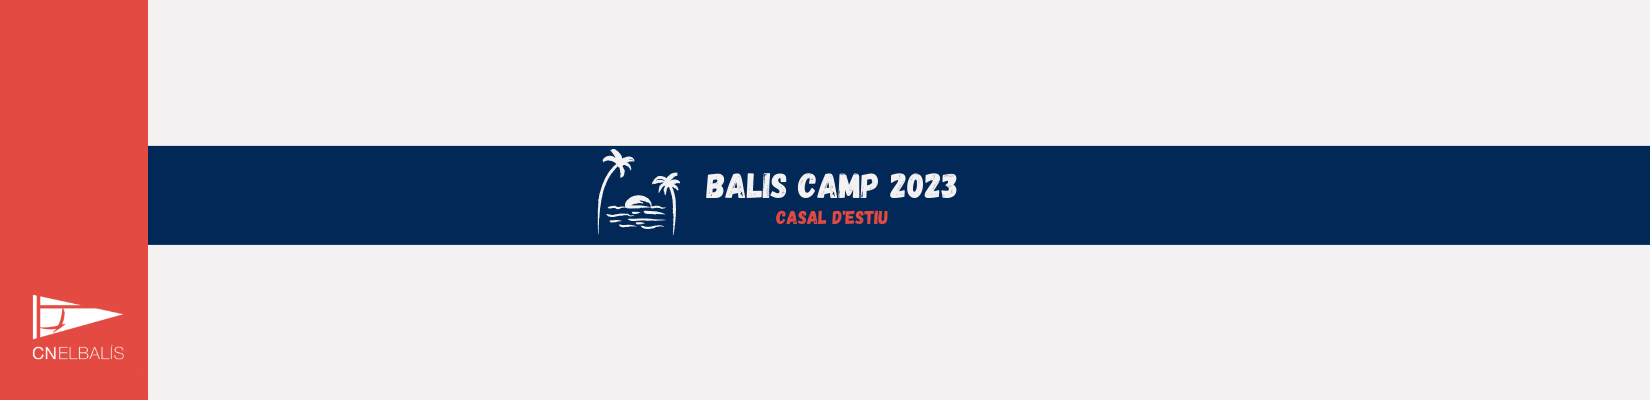 BALIS CAMP 2023 CAMPUS DE VERANO